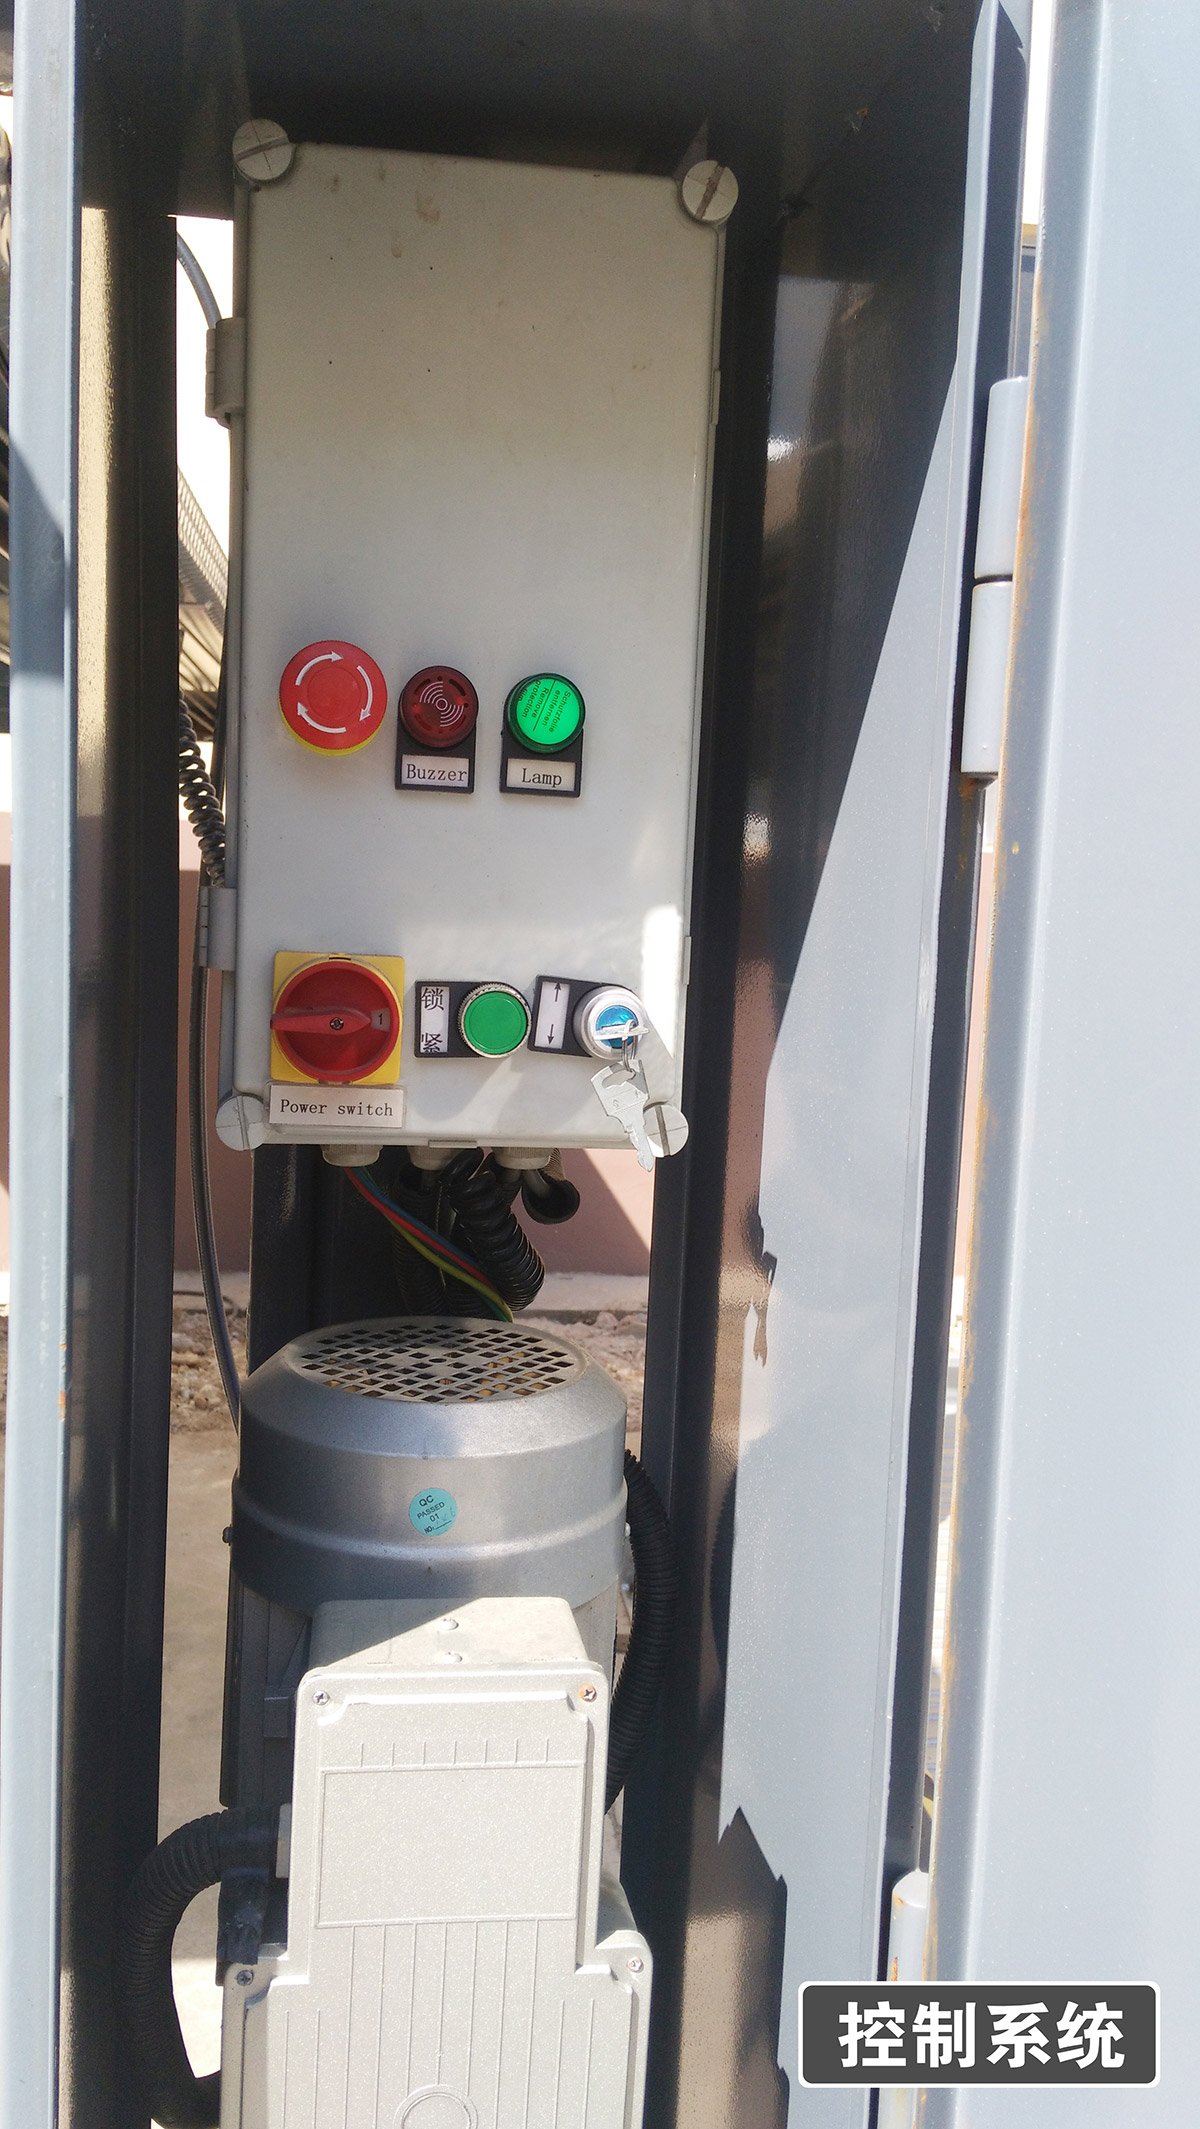 自动停车13四柱简易升降机械立体停车控制系统.jpg